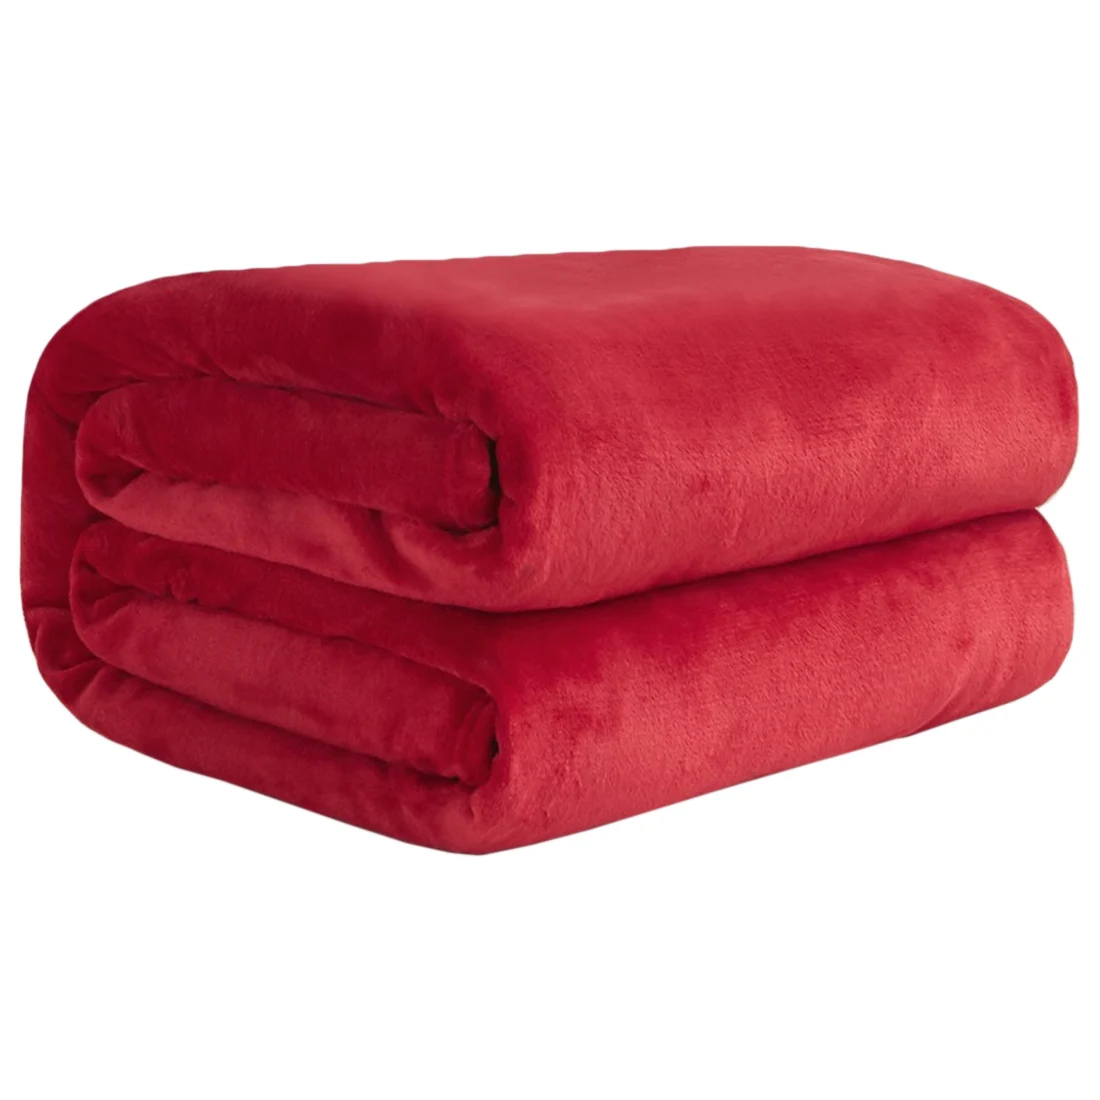 Домашний текстиль одноцветное Фланелевое Коралловое Флисовое одеяло розовое супер мягкое одеяло диван/кровать/Самолет путешествия лоскутное одноцветное - Цвет: Red